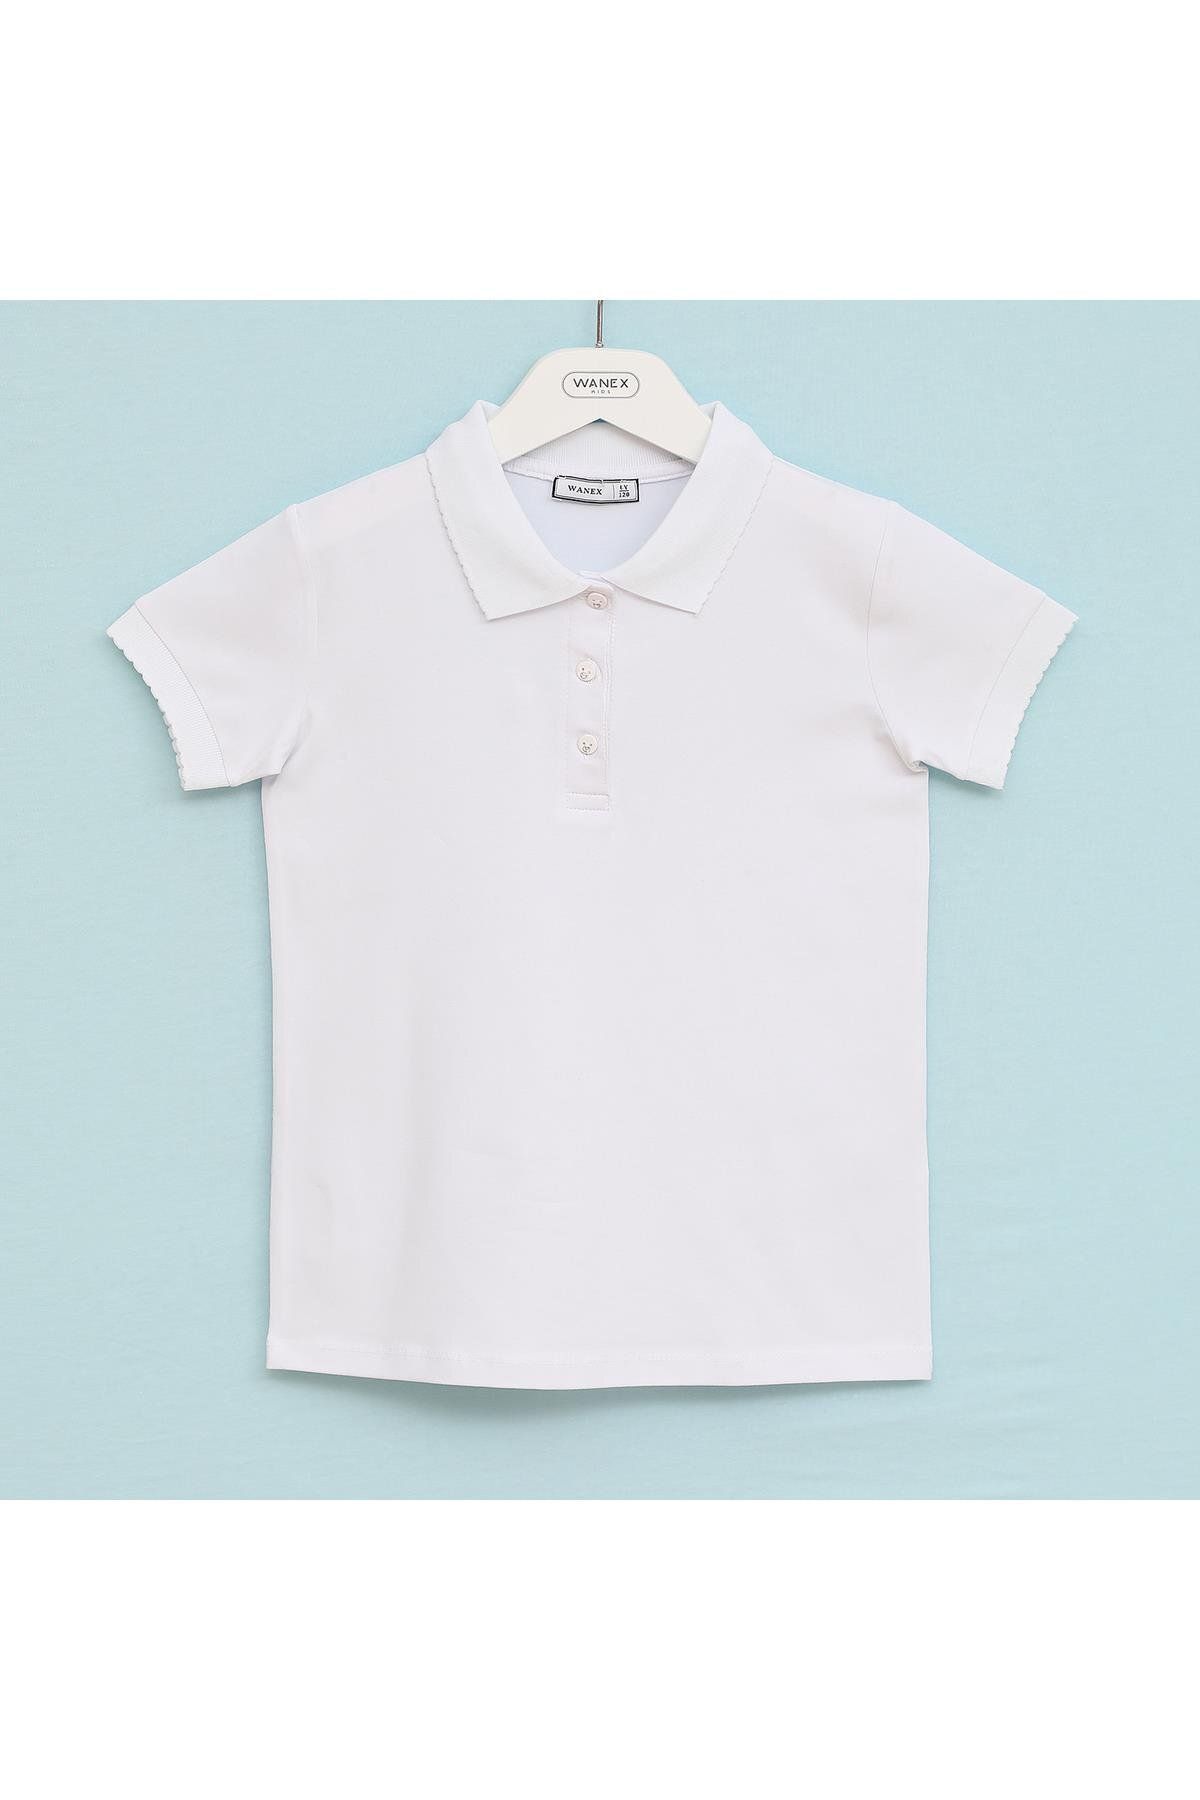 WANEX Kız Çocuk Polo Yaka Tişört - 3205334 - Beyaz